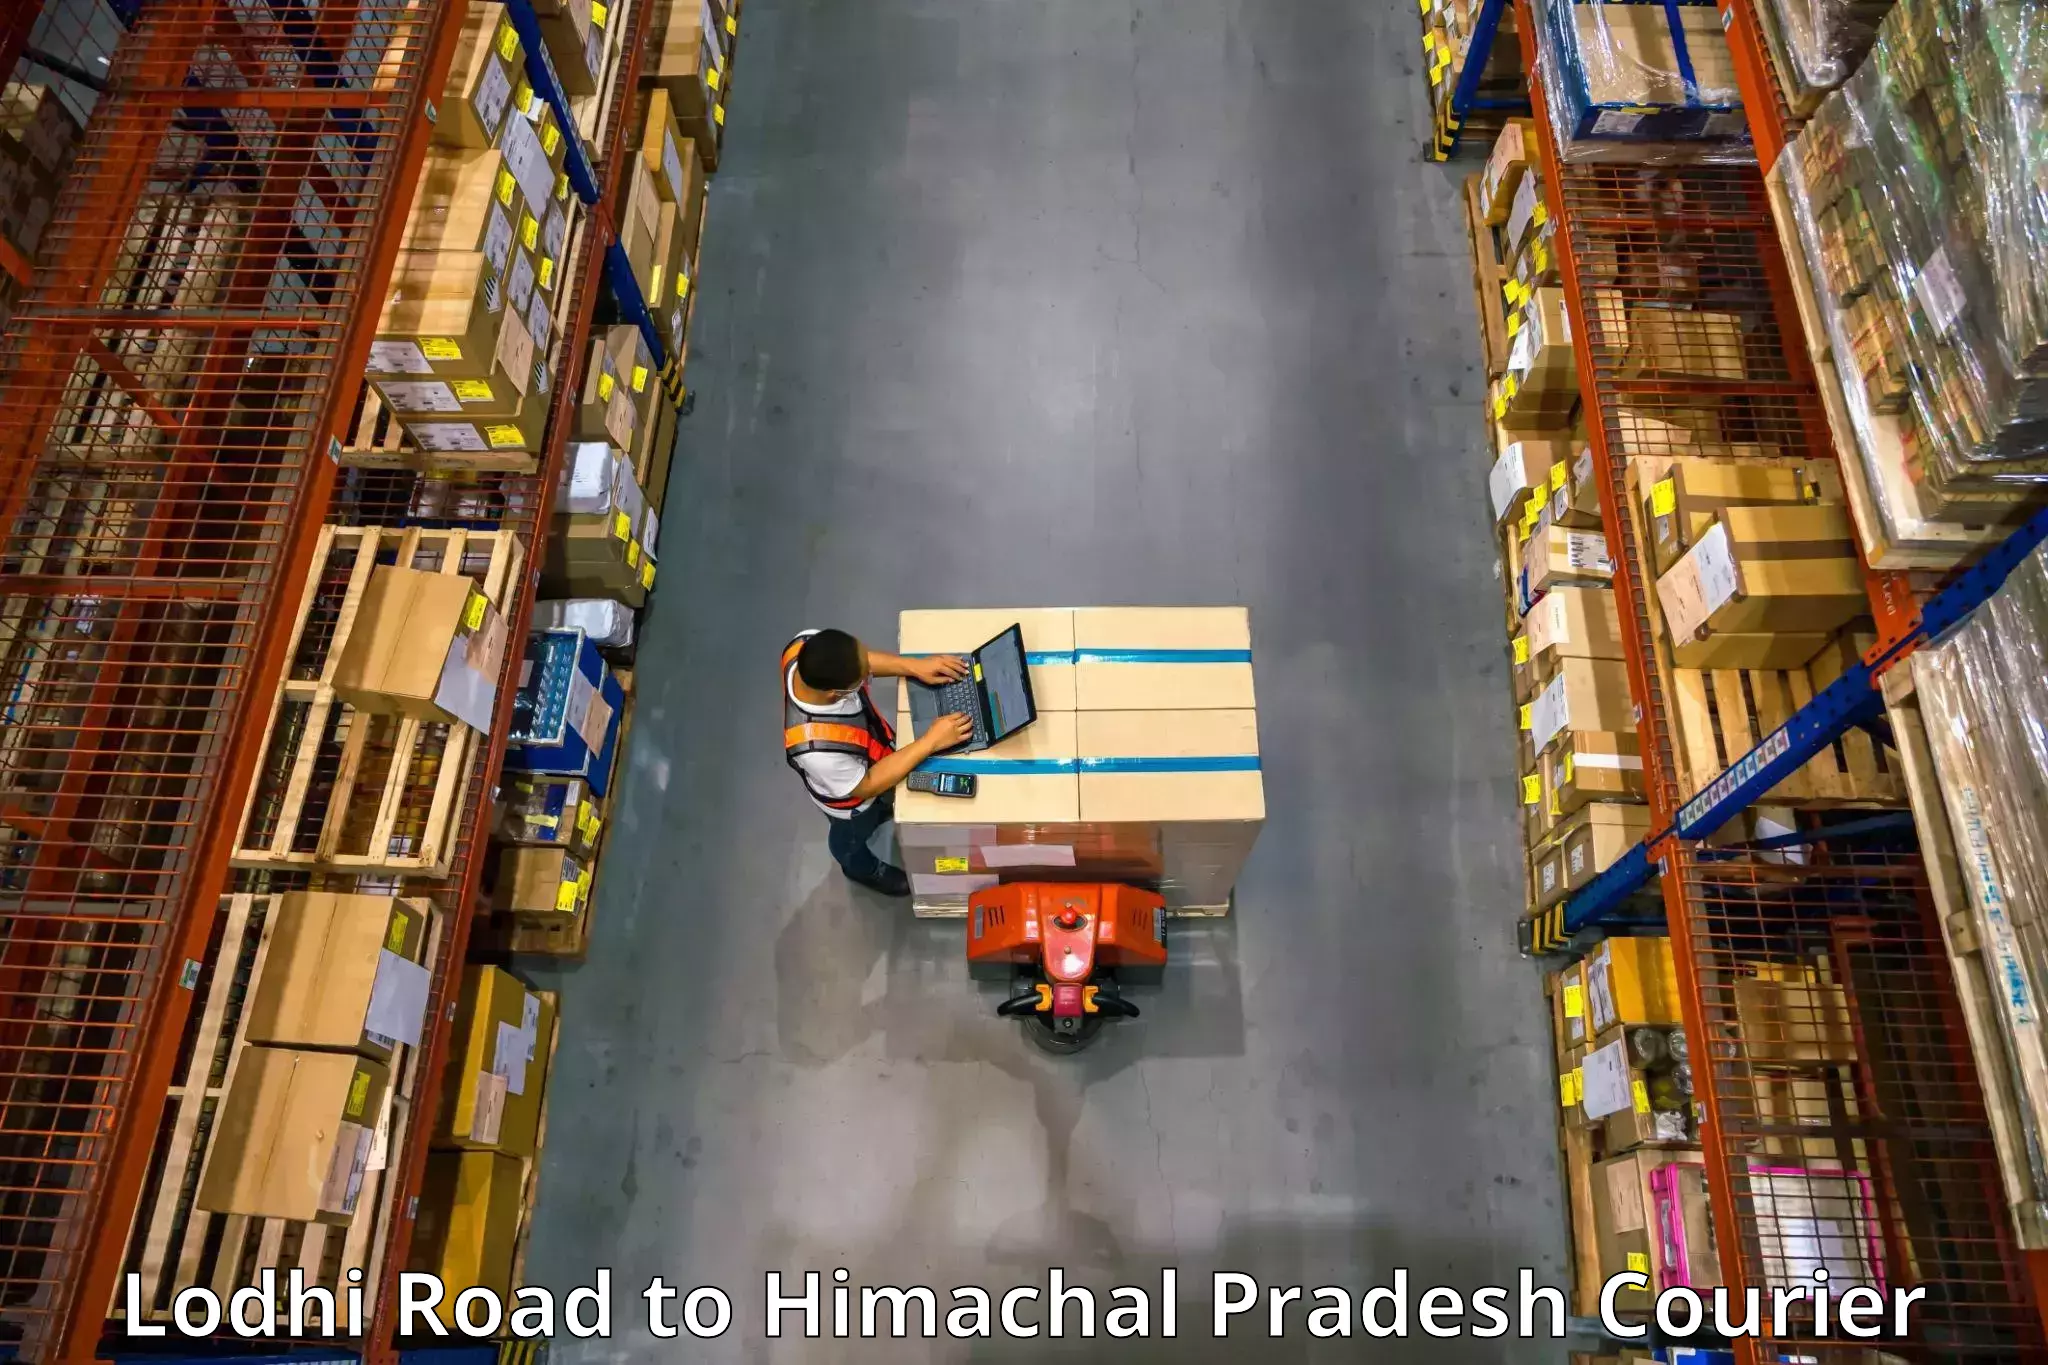 Furniture moving plans Lodhi Road to Himachal Pradesh